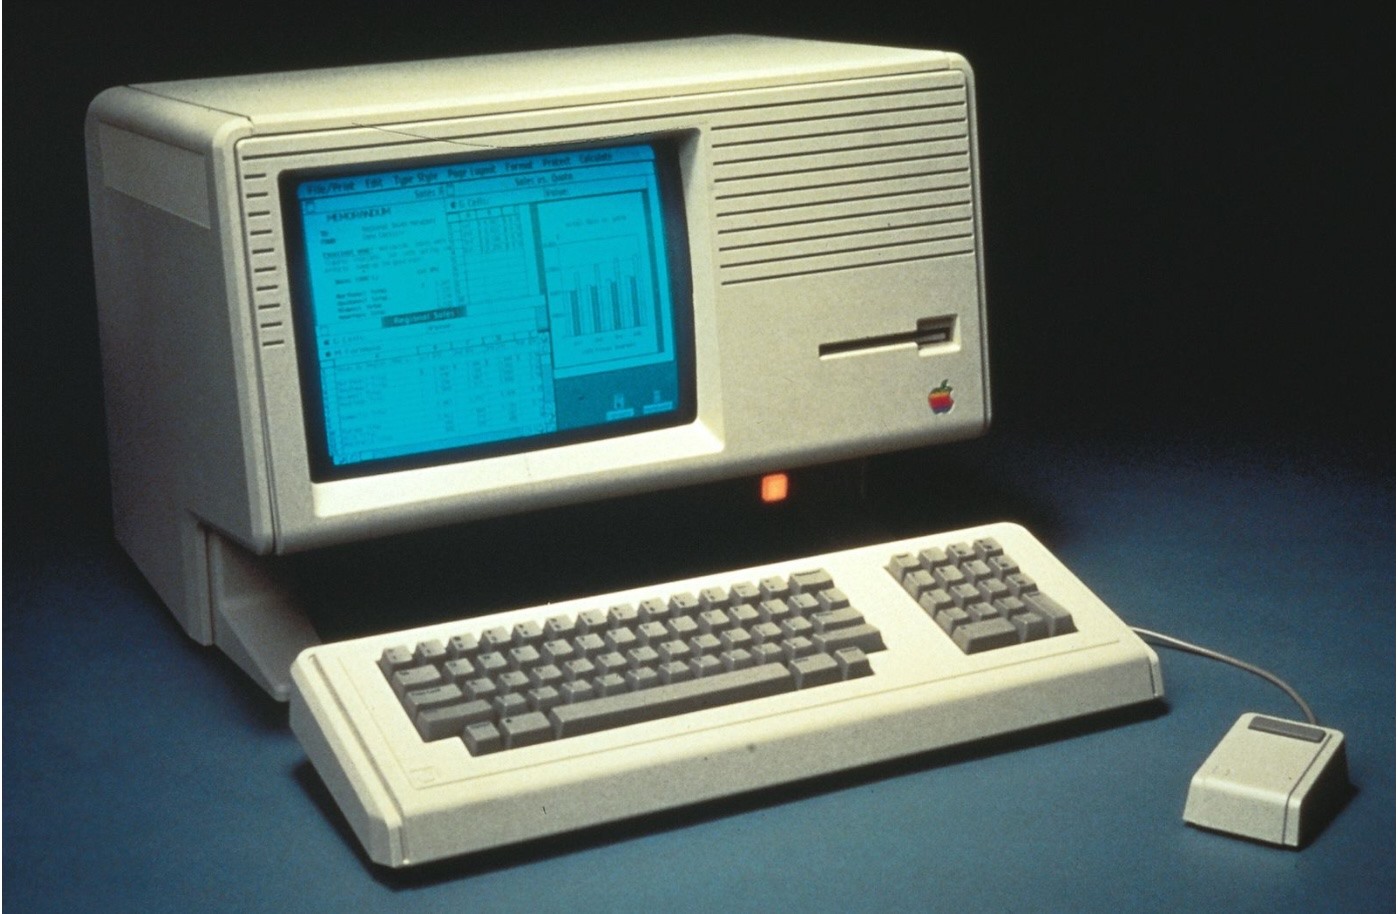 Apple Lisa mạnh mẽ nhưng quá đắt đỏ vào thời điểm đó. Ảnh: Macrumors